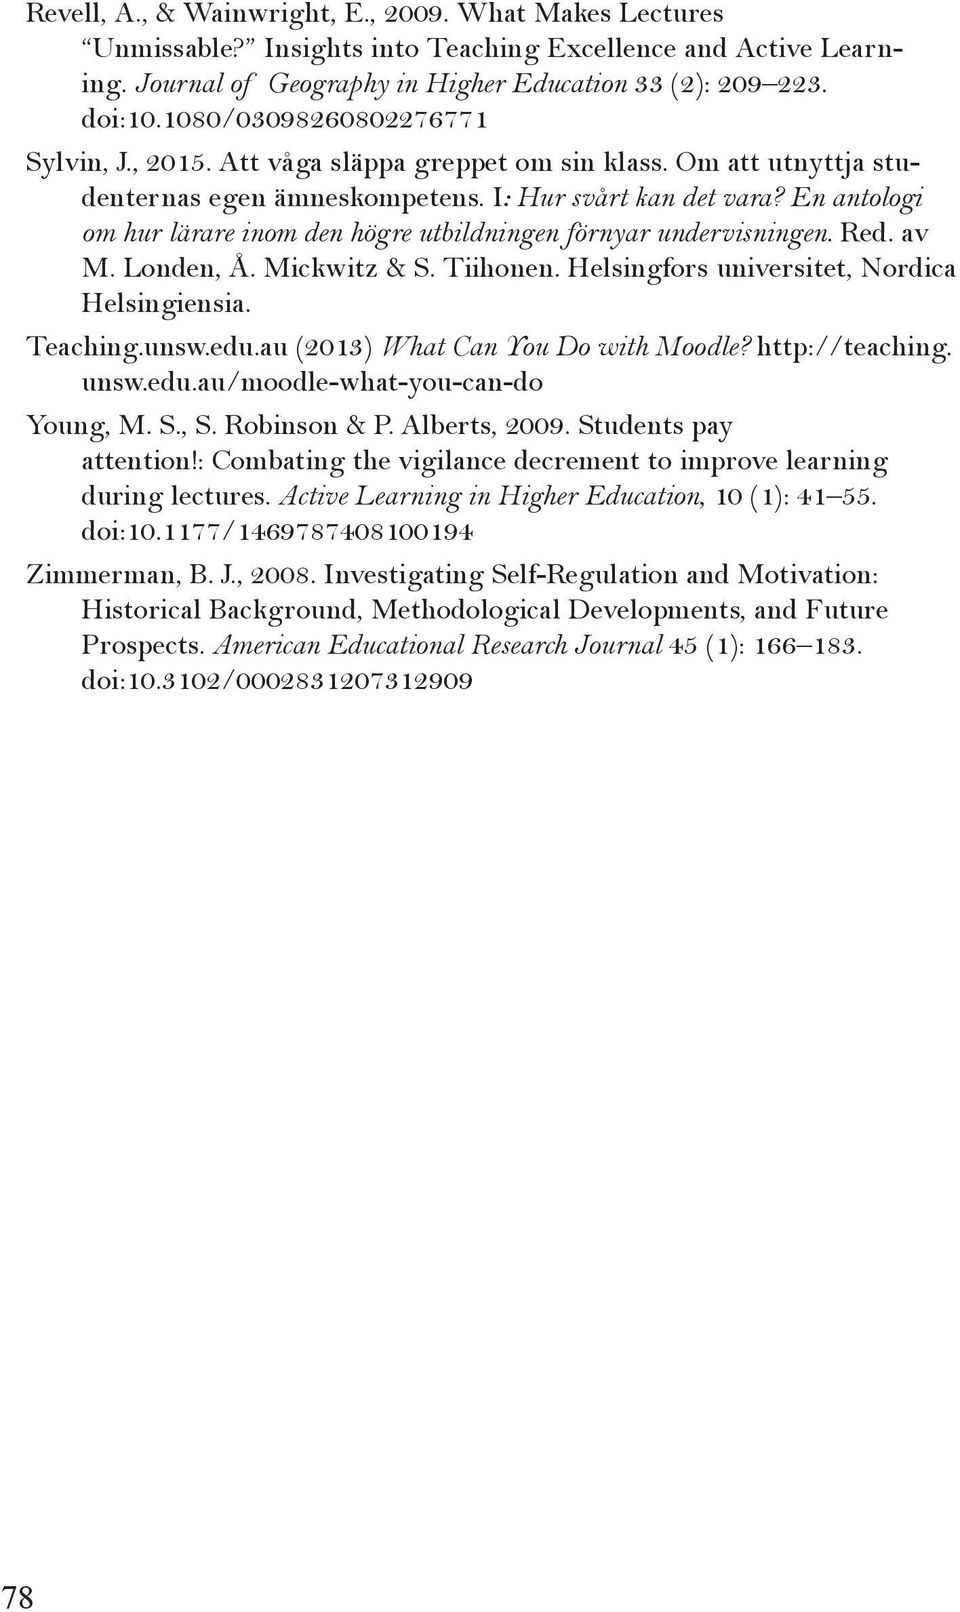 En antologi om hur lärare inom den högre utbildningen förnyar undervisningen. Red. av M. Londen, Å. Mickwitz & S. Tiihonen. Helsingfors universitet, Nordica Helsingiensia. Teaching.unsw.edu.